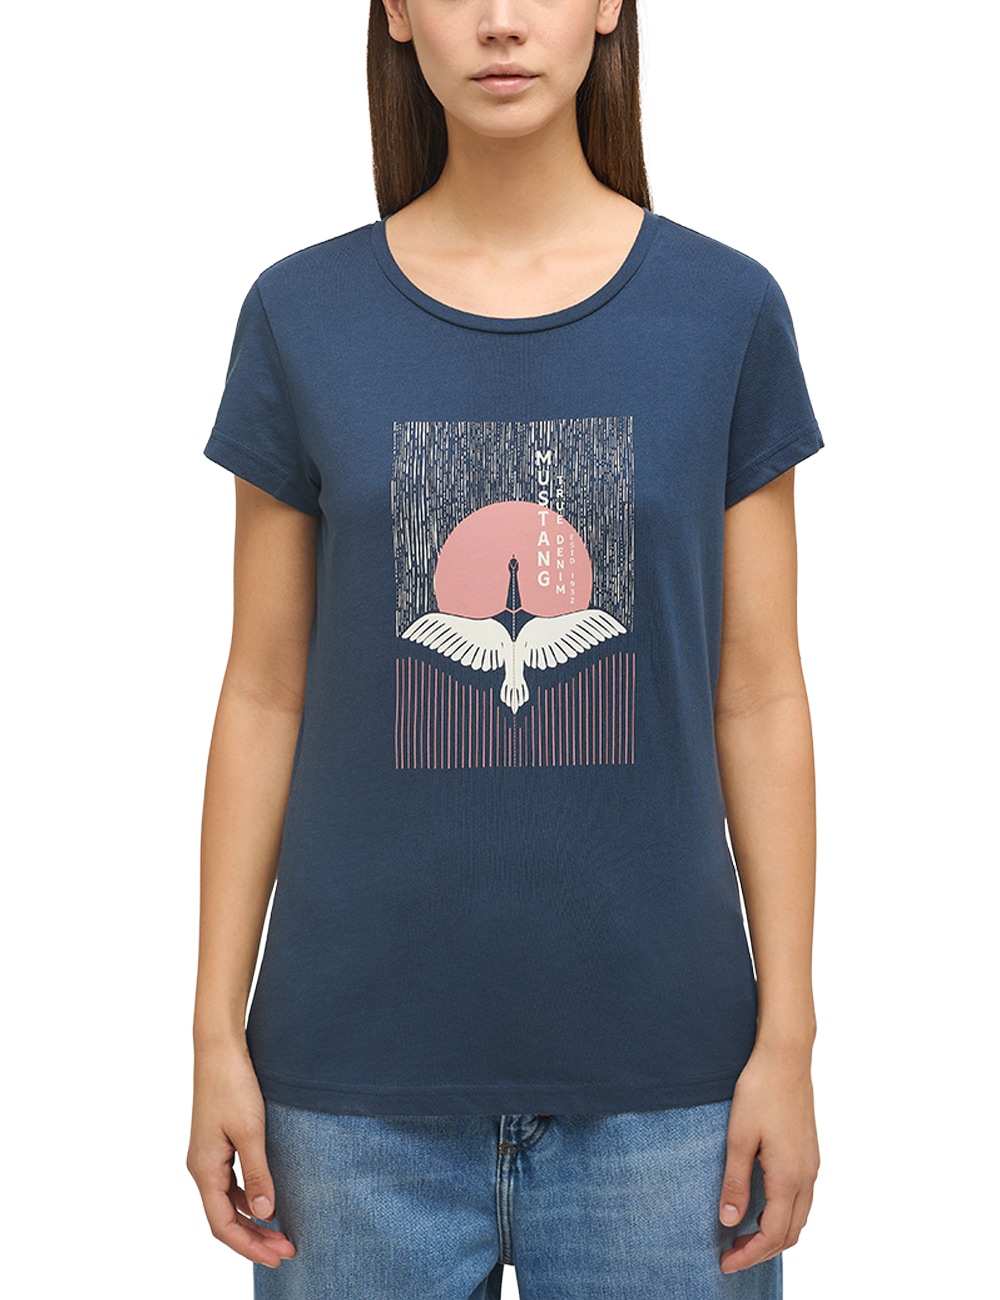 Alexia bestellen »Style Print« T-Shirt C MUSTANG online